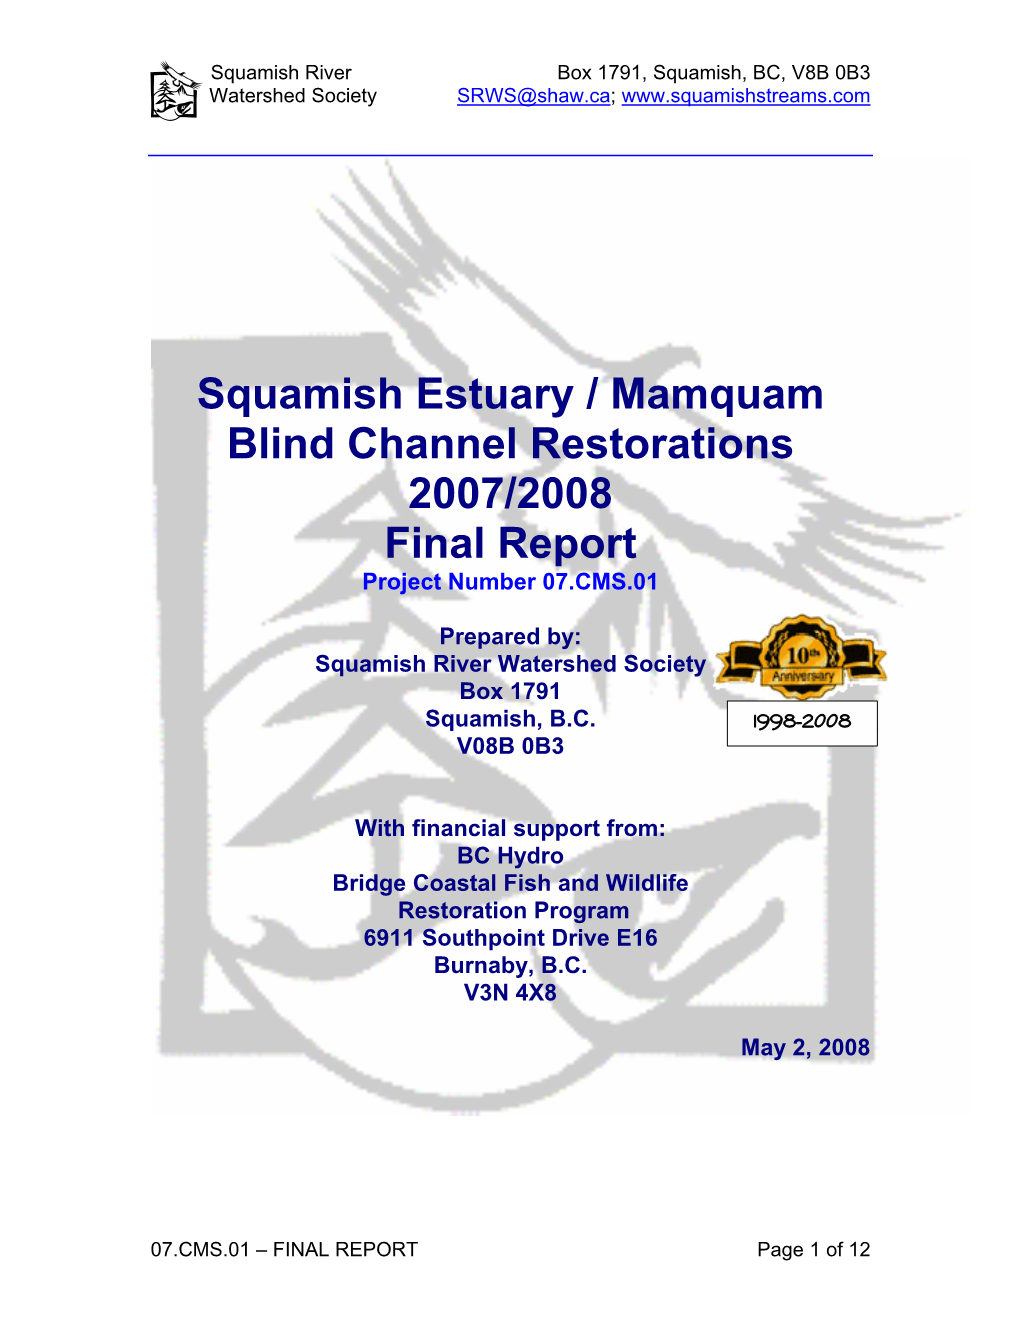 Squamish River Watershed Society Box 1791 Squamish, B.C